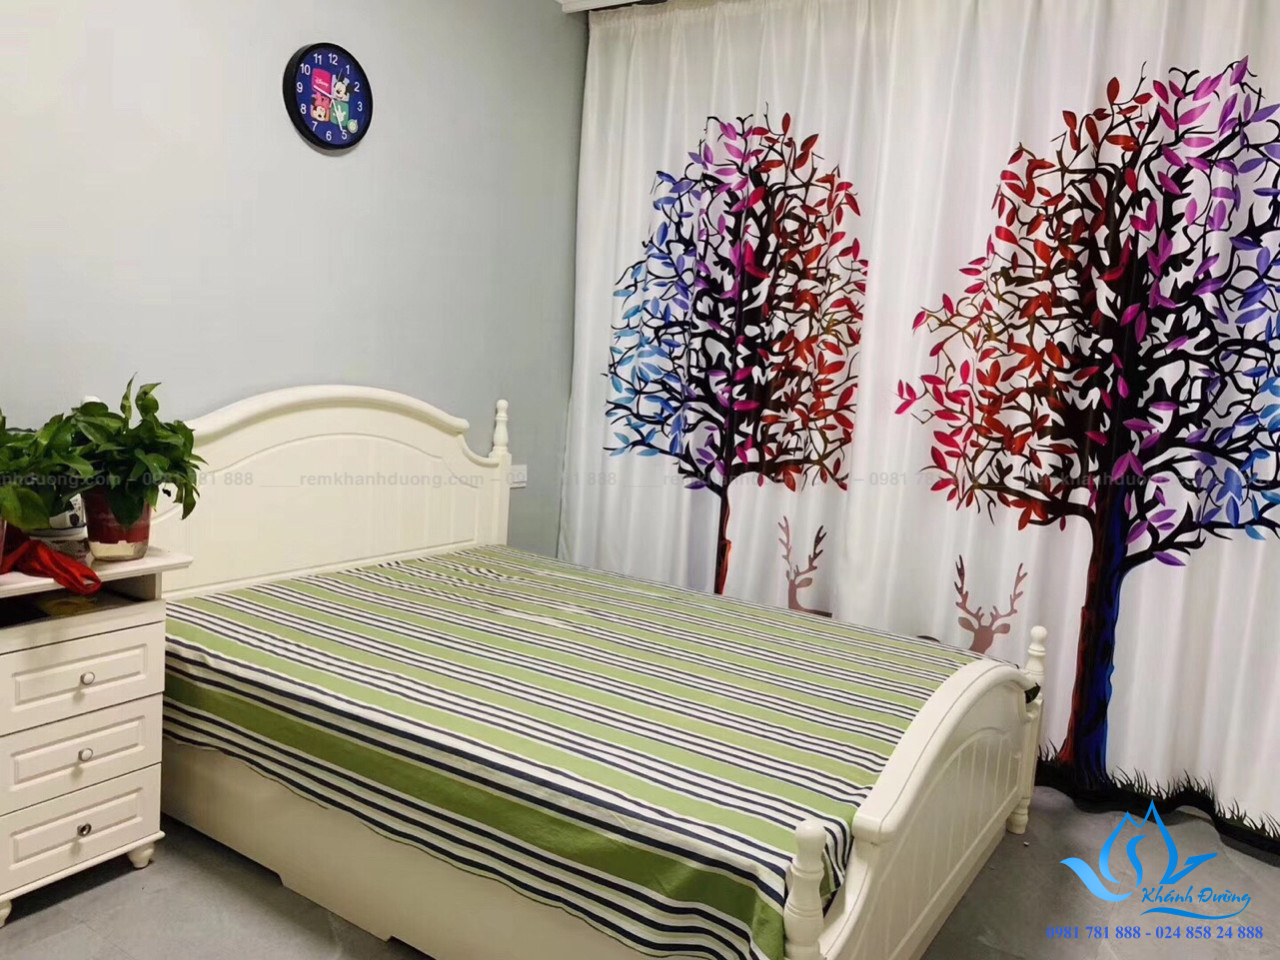 Tư vấn chọn rèm vải in tranh 3D cho phòng ngủ hiện đại